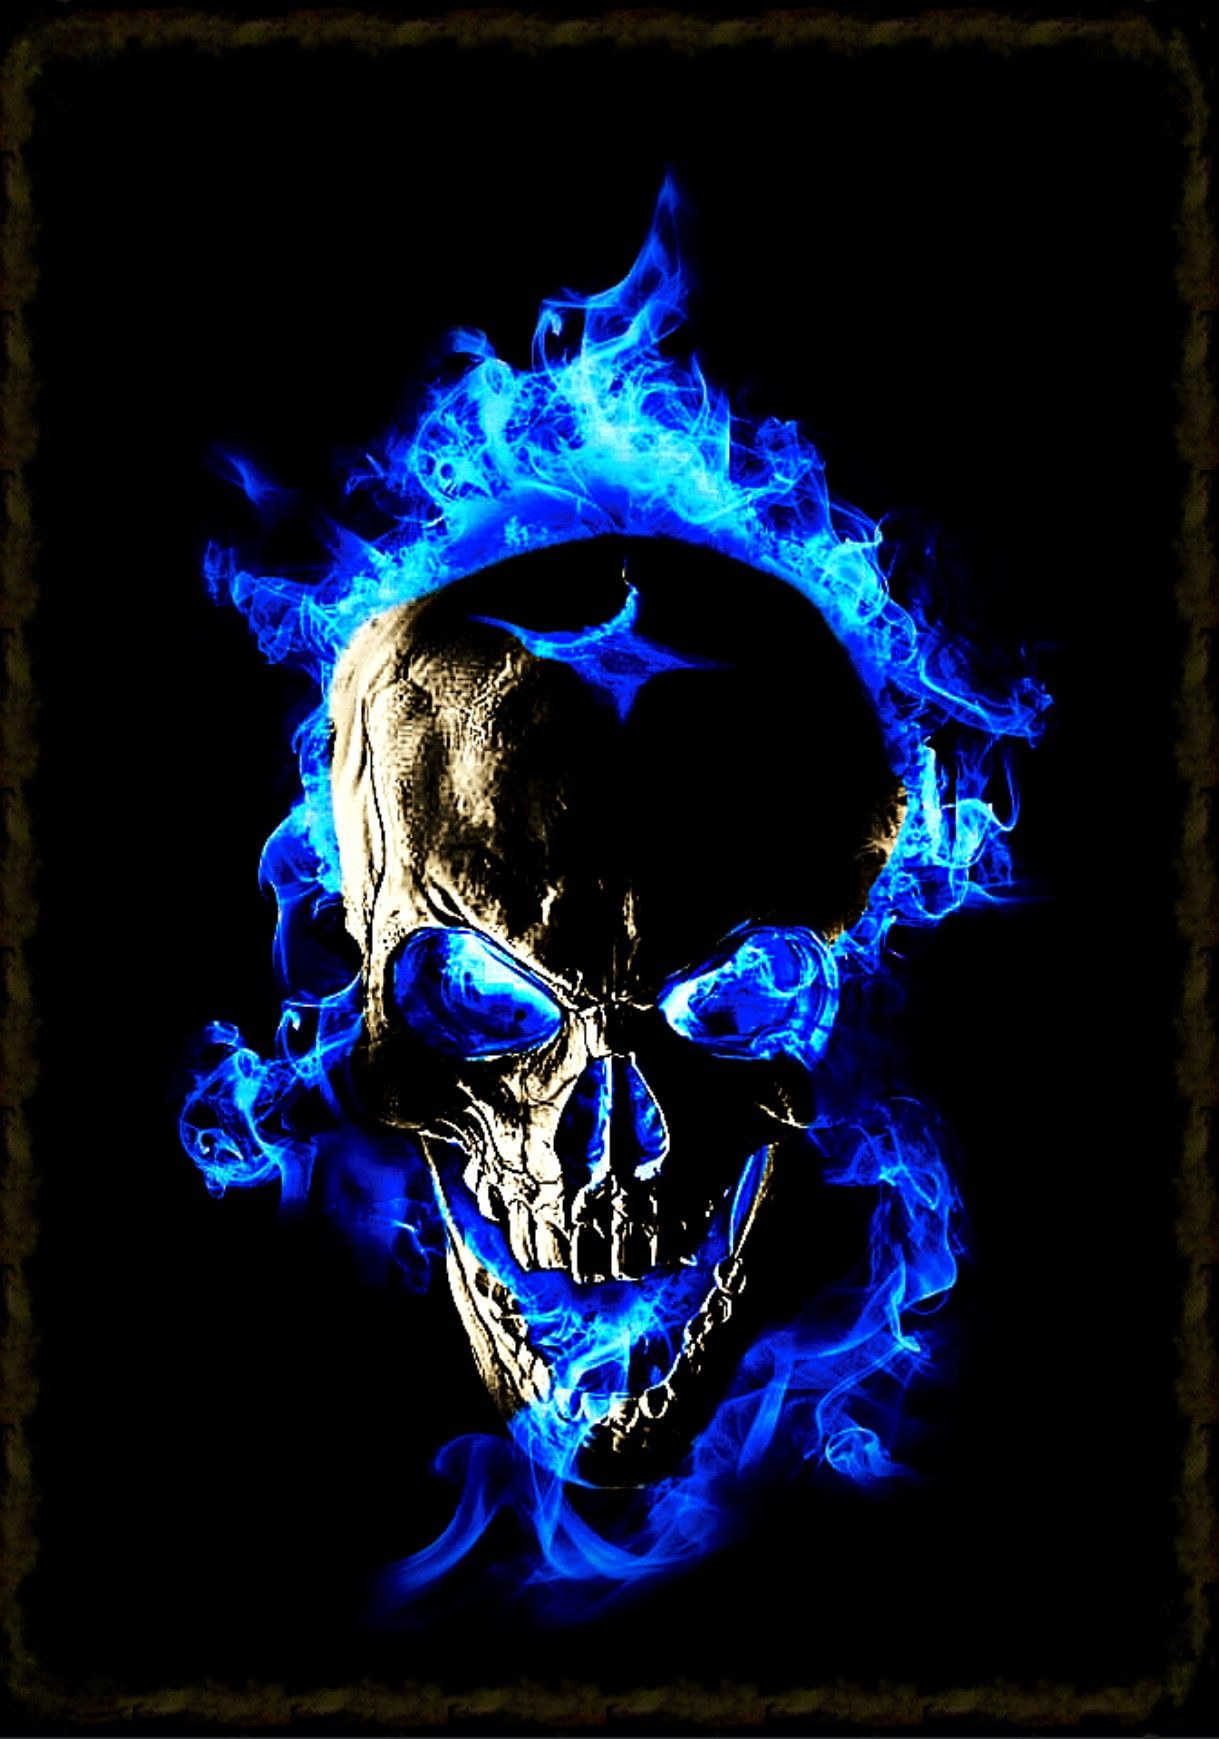 skull art wallpaper,skull,bone,electric blue,darkness,illustration